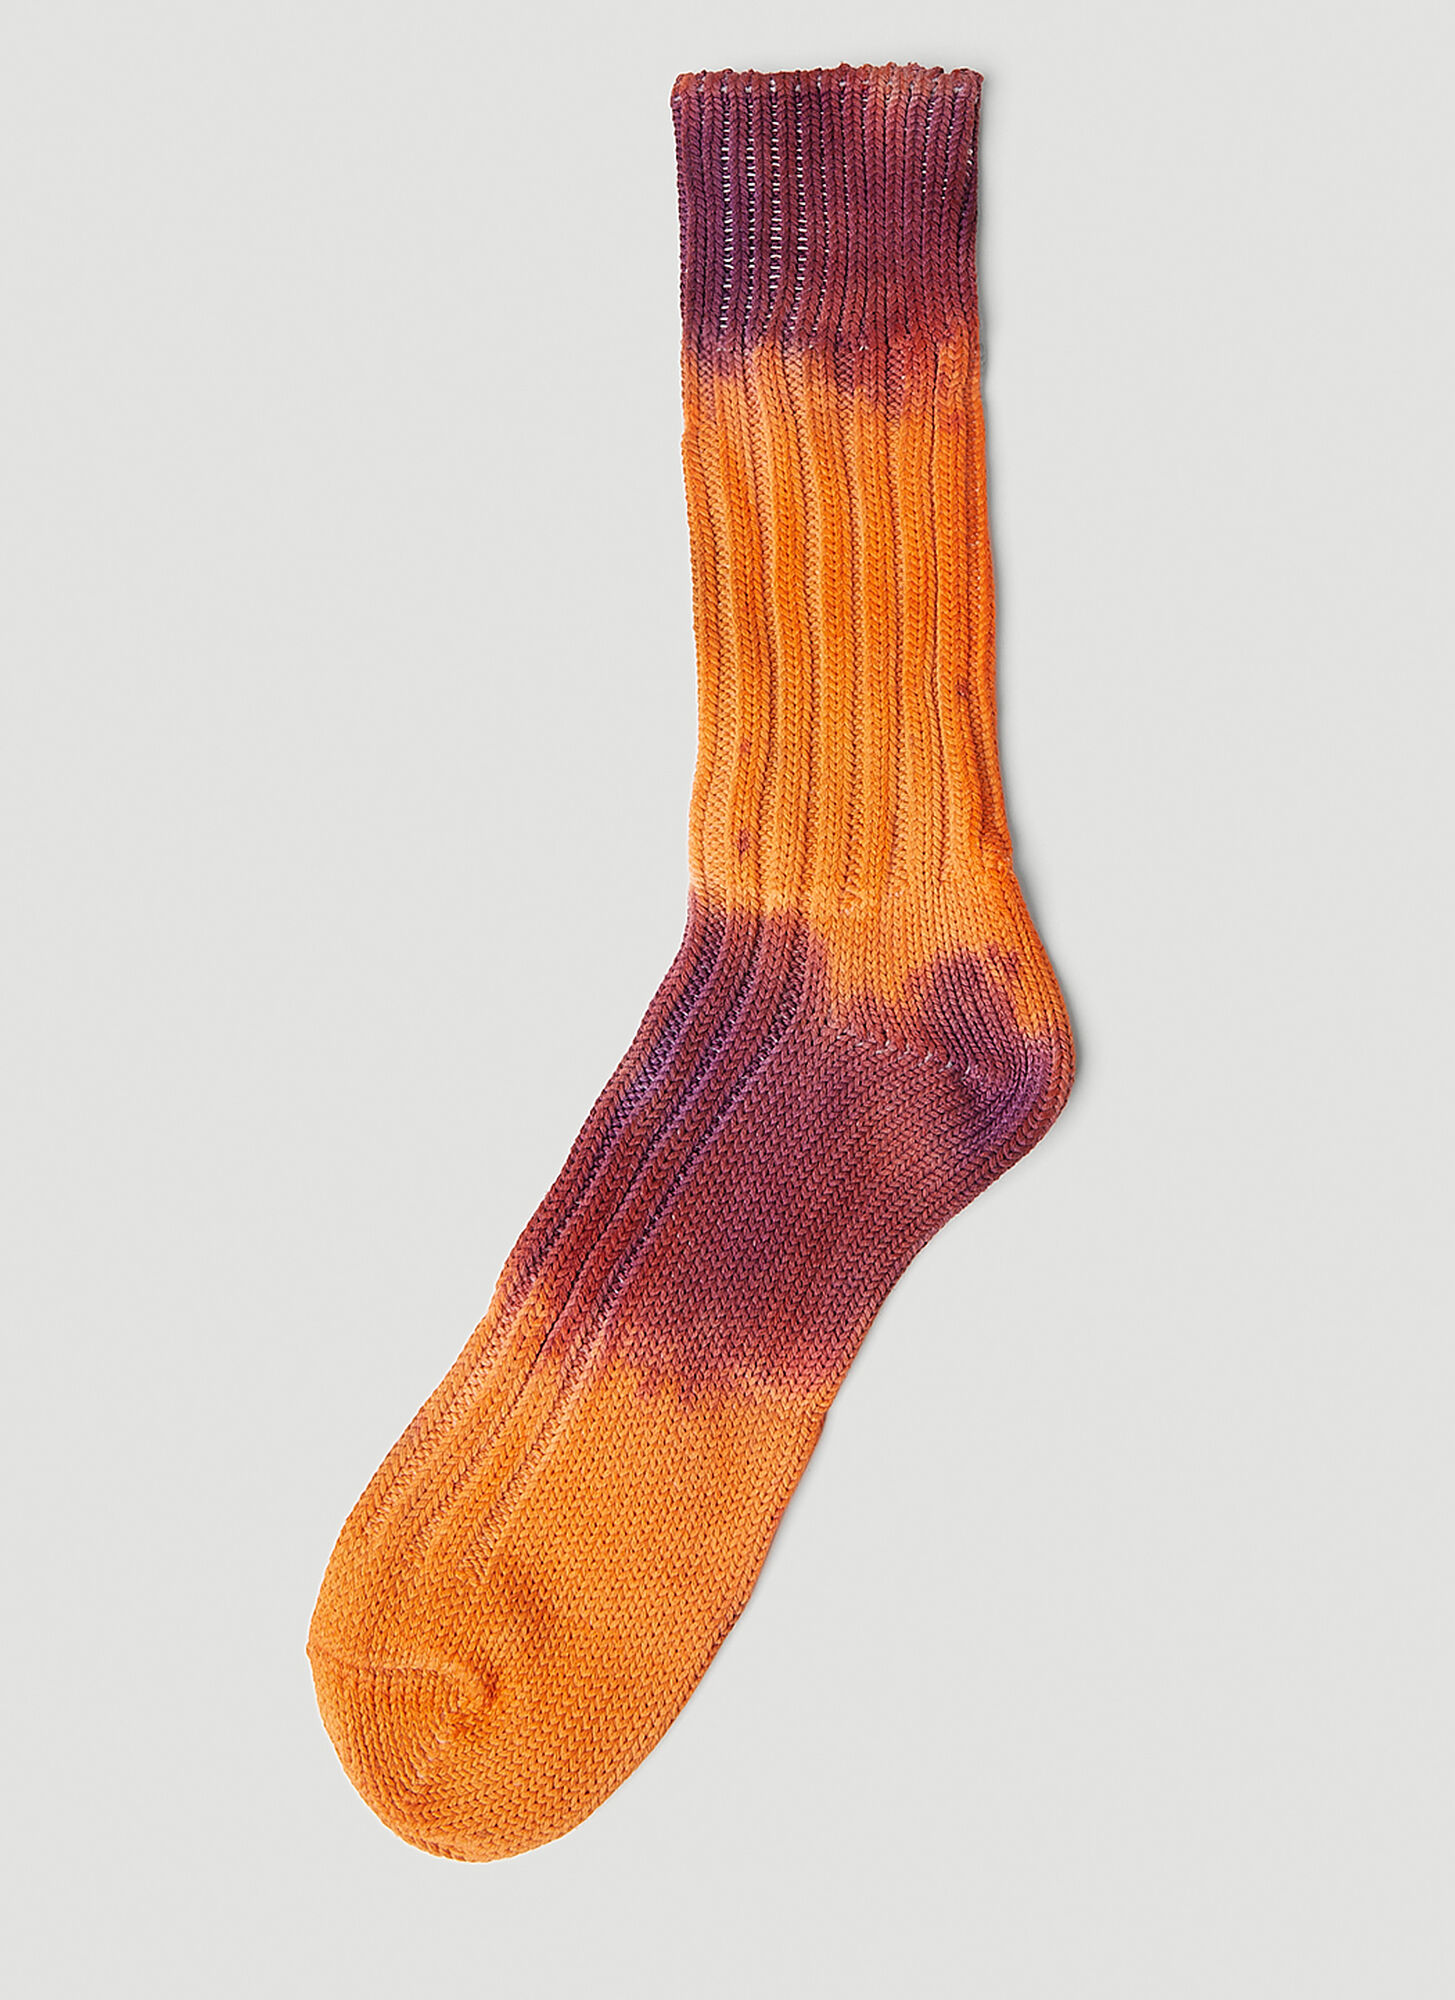 Stain Shade X Decka Socks Tie Dye Socks In Purple